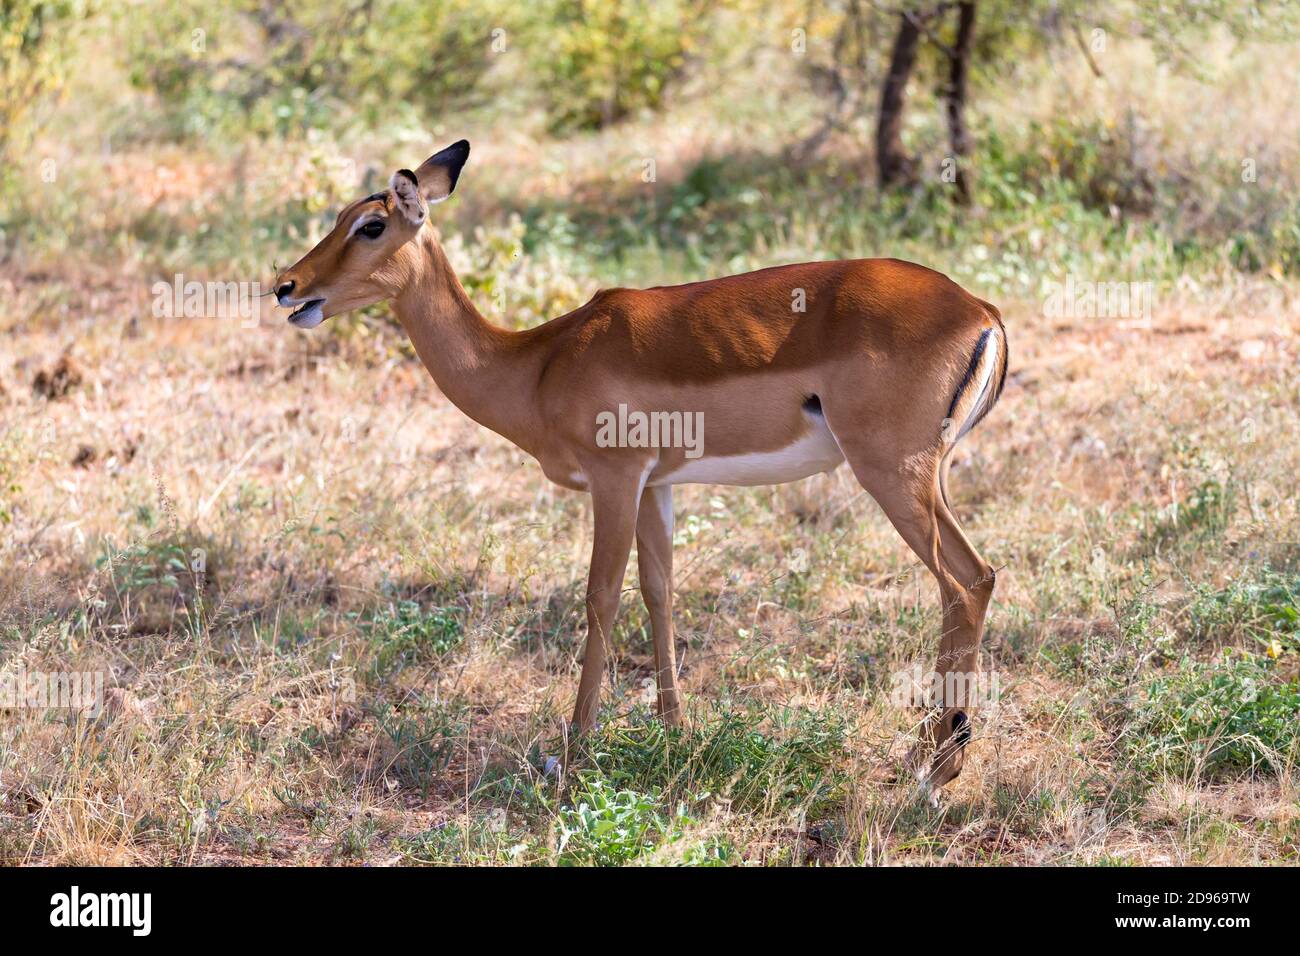 La Gazelle Grant se encogen en la inmensidad de la sabana keniana. Foto de stock